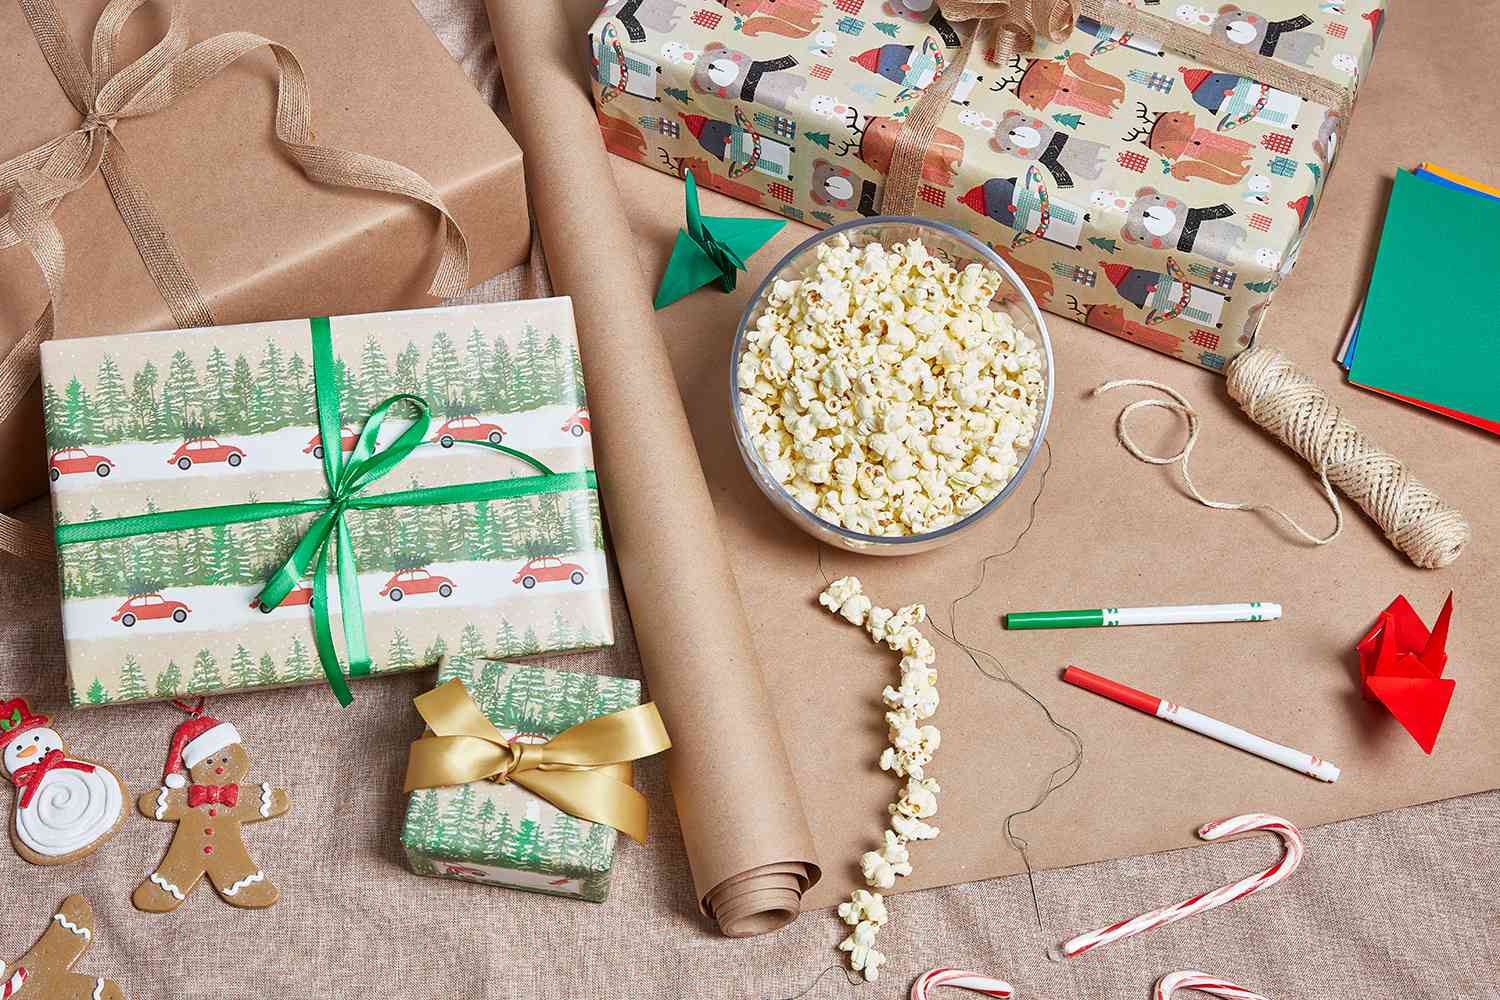 aufgereihtes Popcorn und verpackte Geschenke